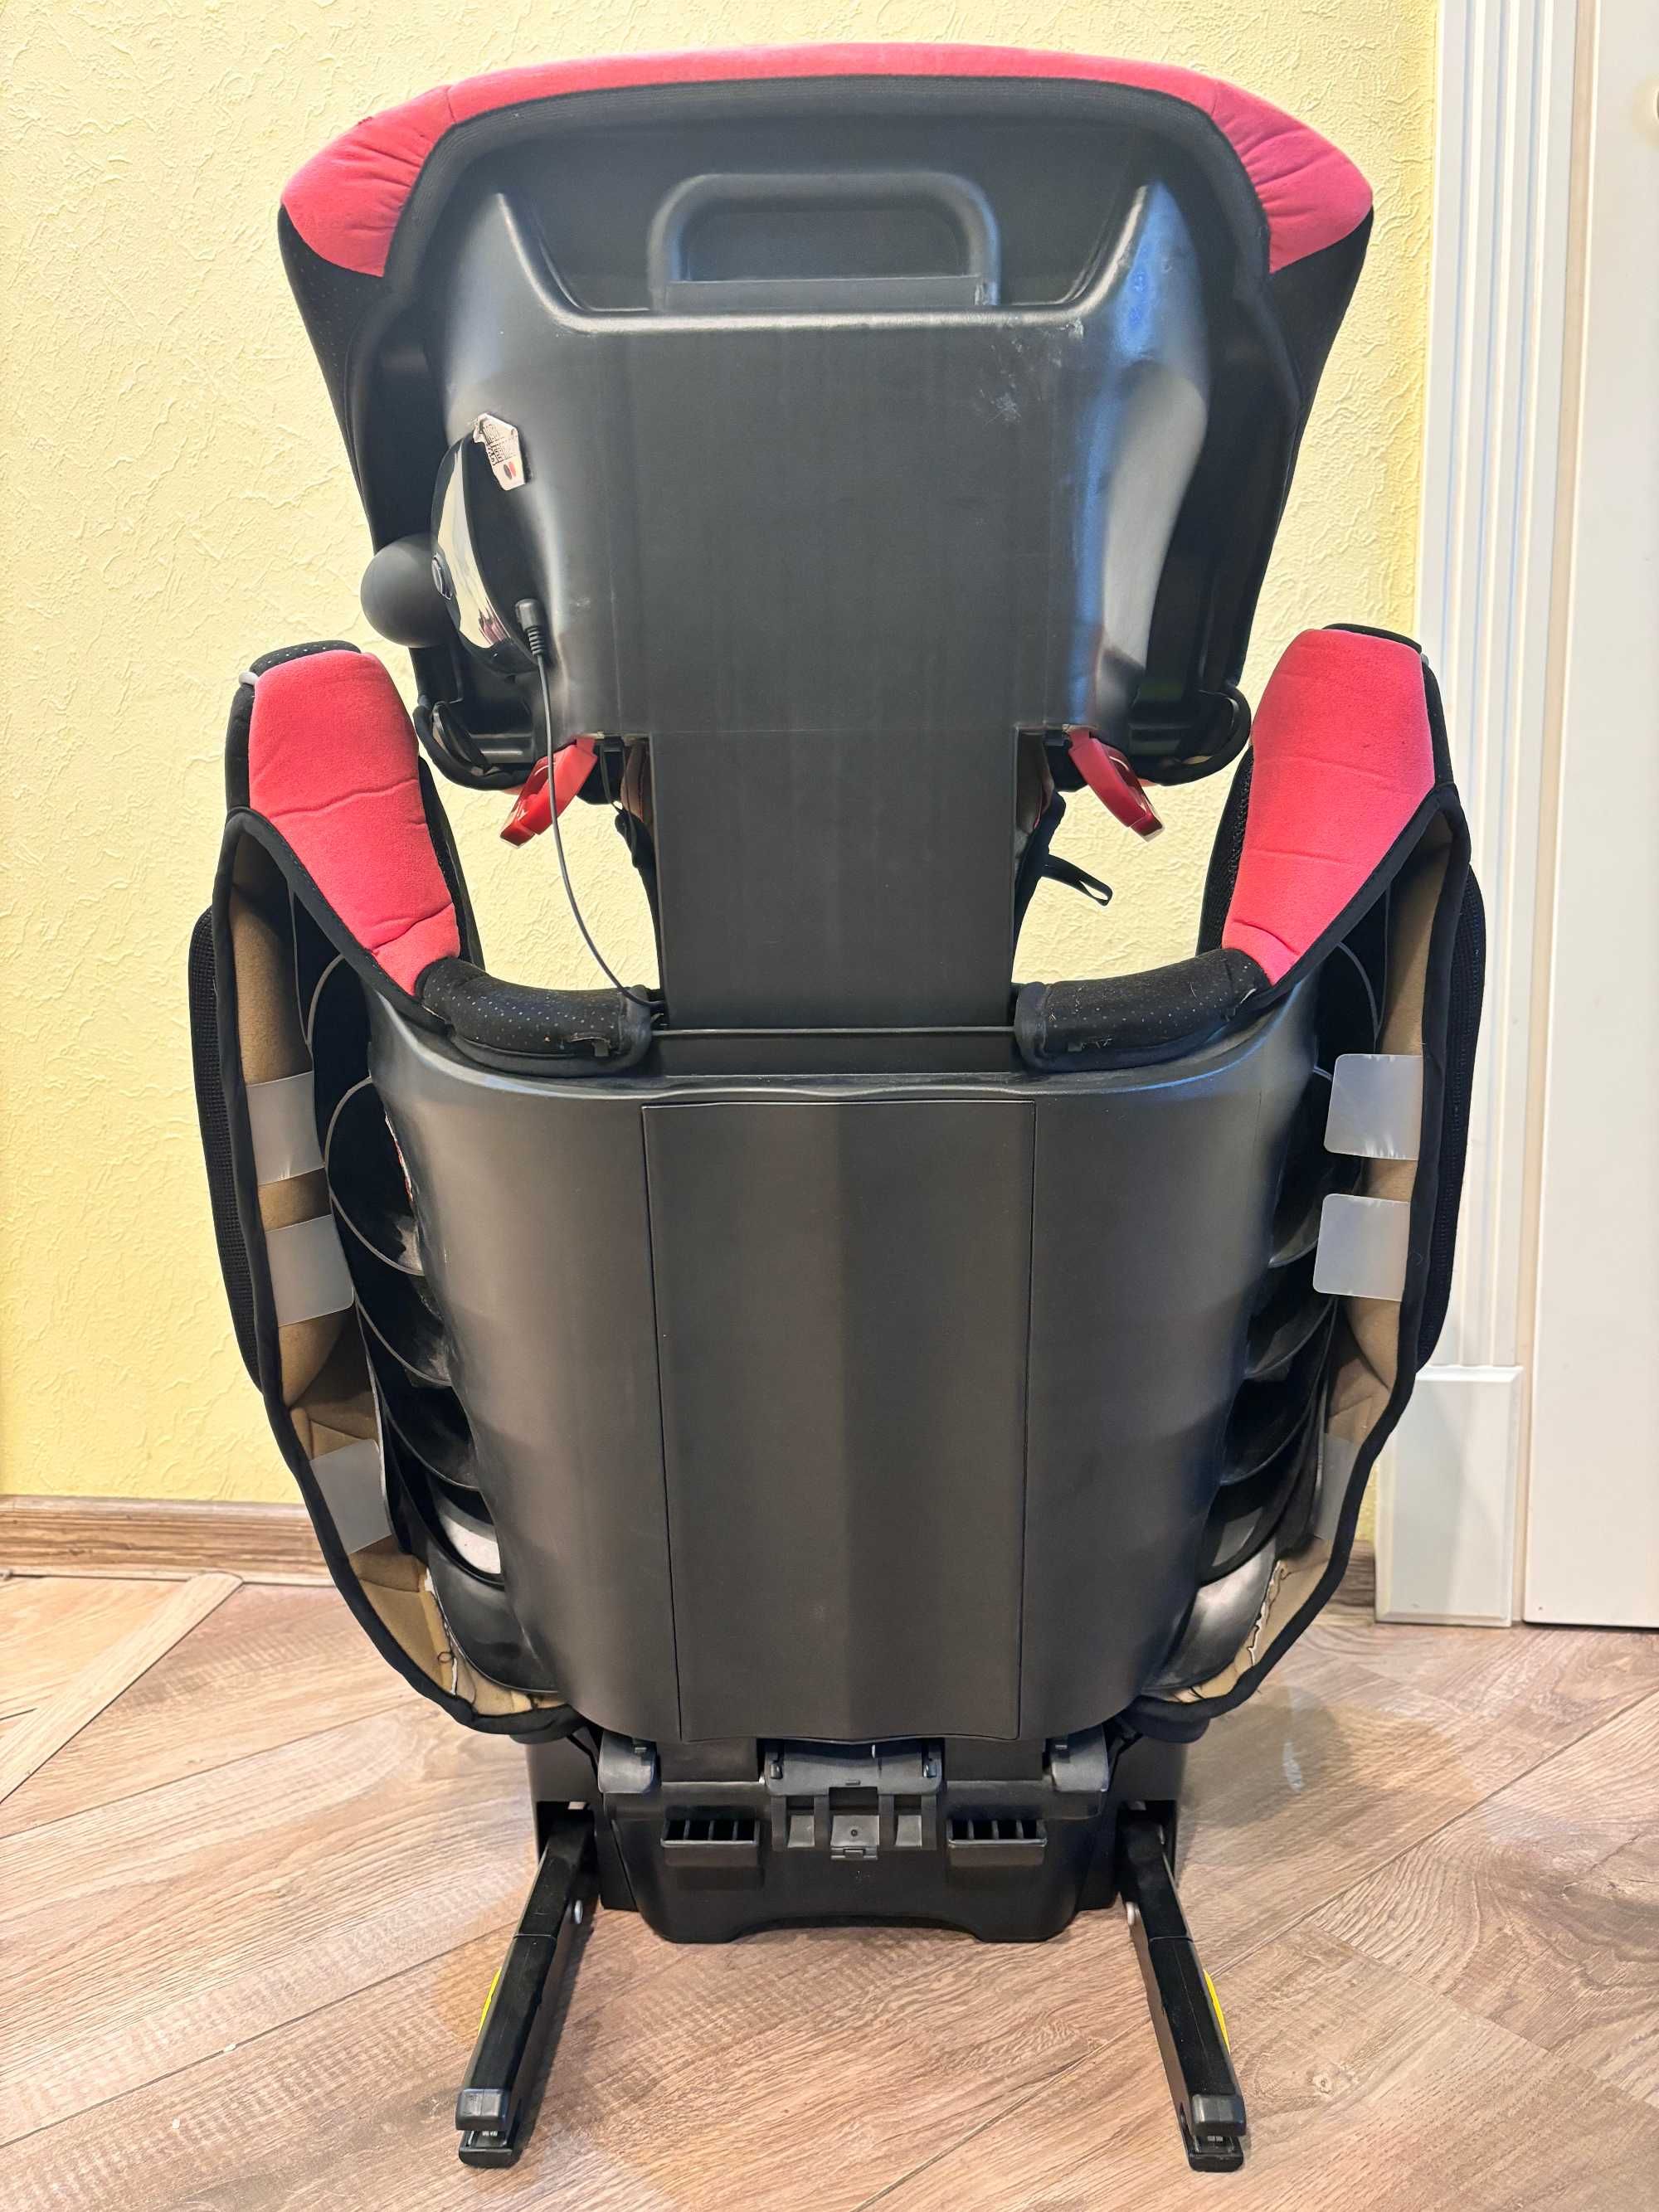 Отличное детское автомобильное кресло RECARO Monza Nova SeatFix